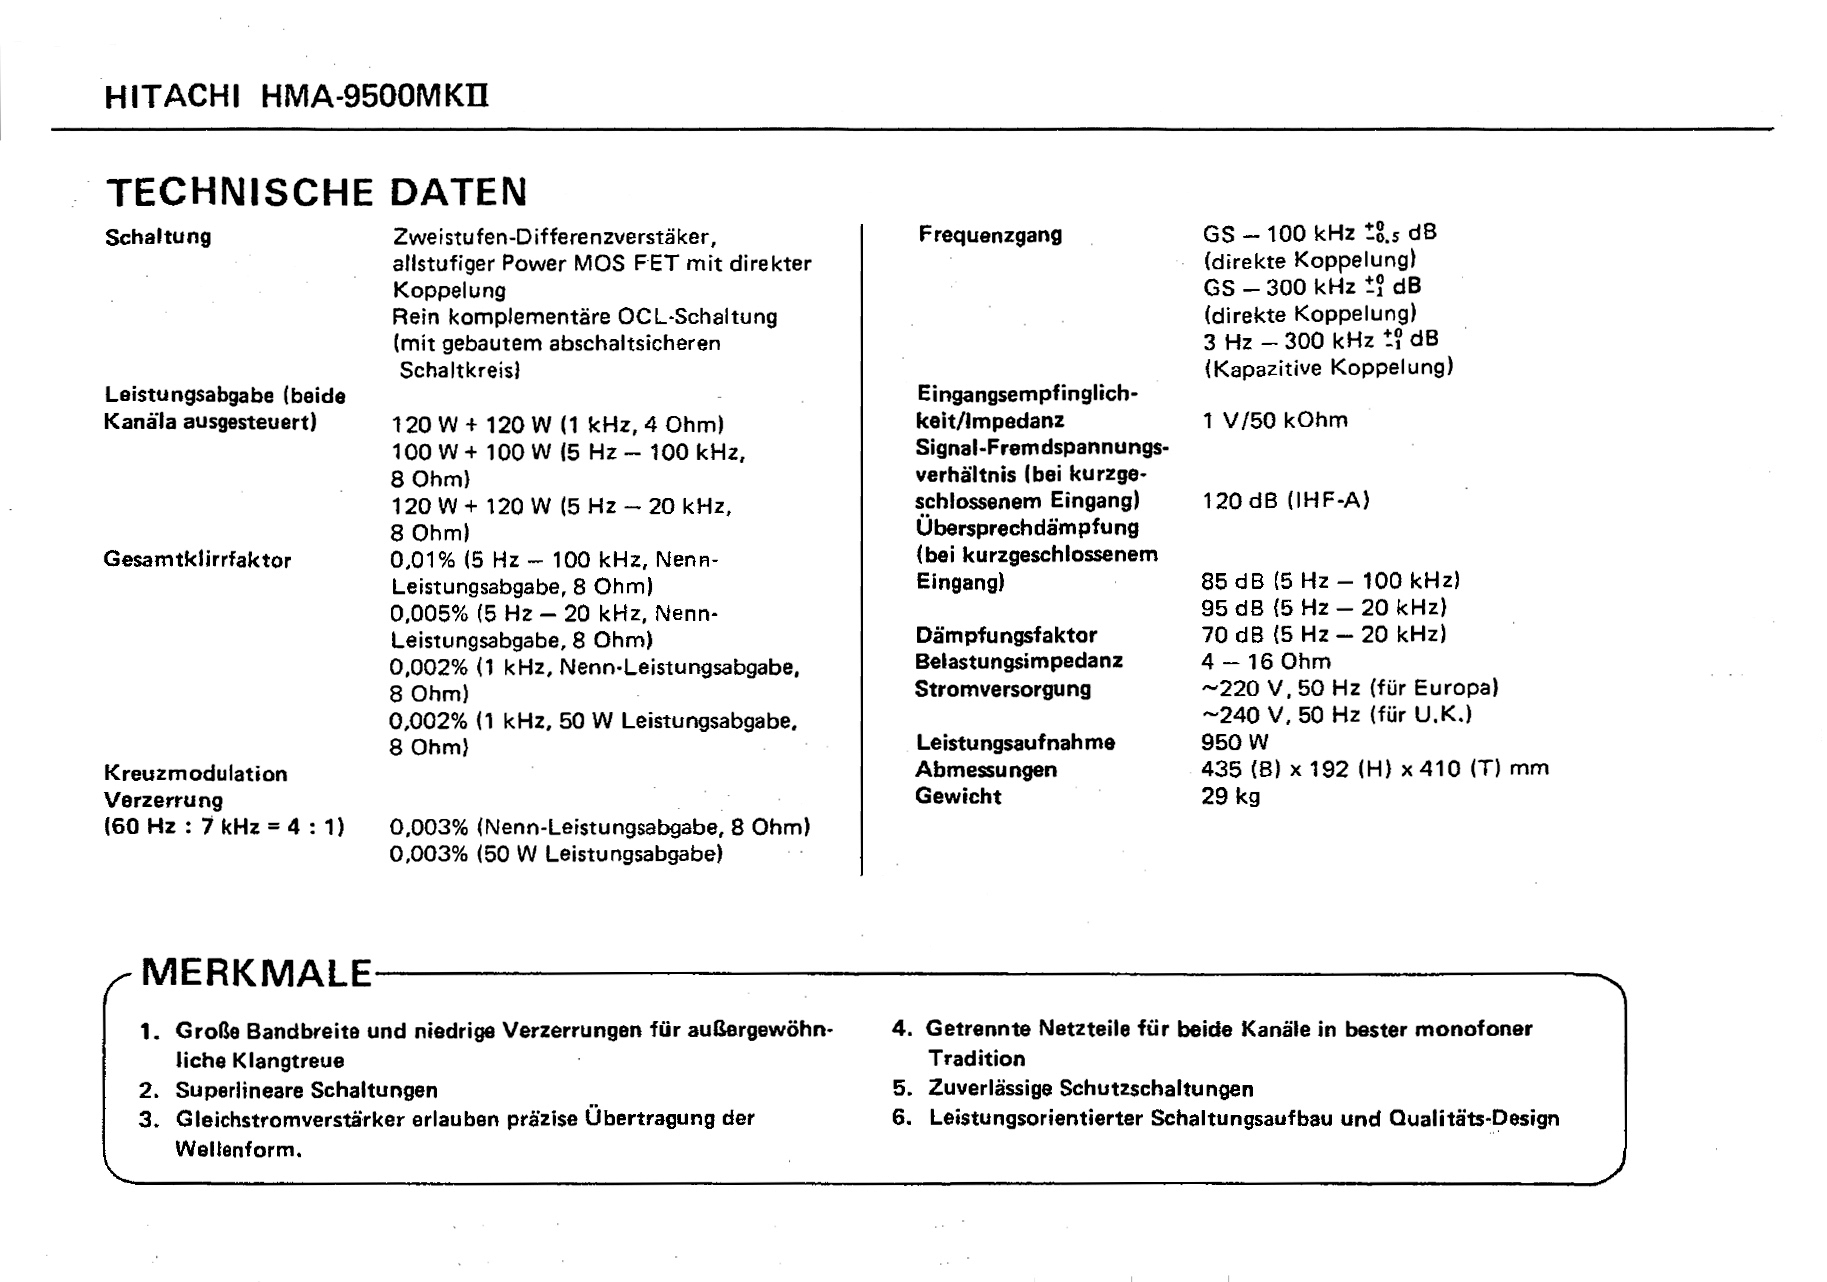 Hitachi HMA-9500 II-Daten-1980.jpg